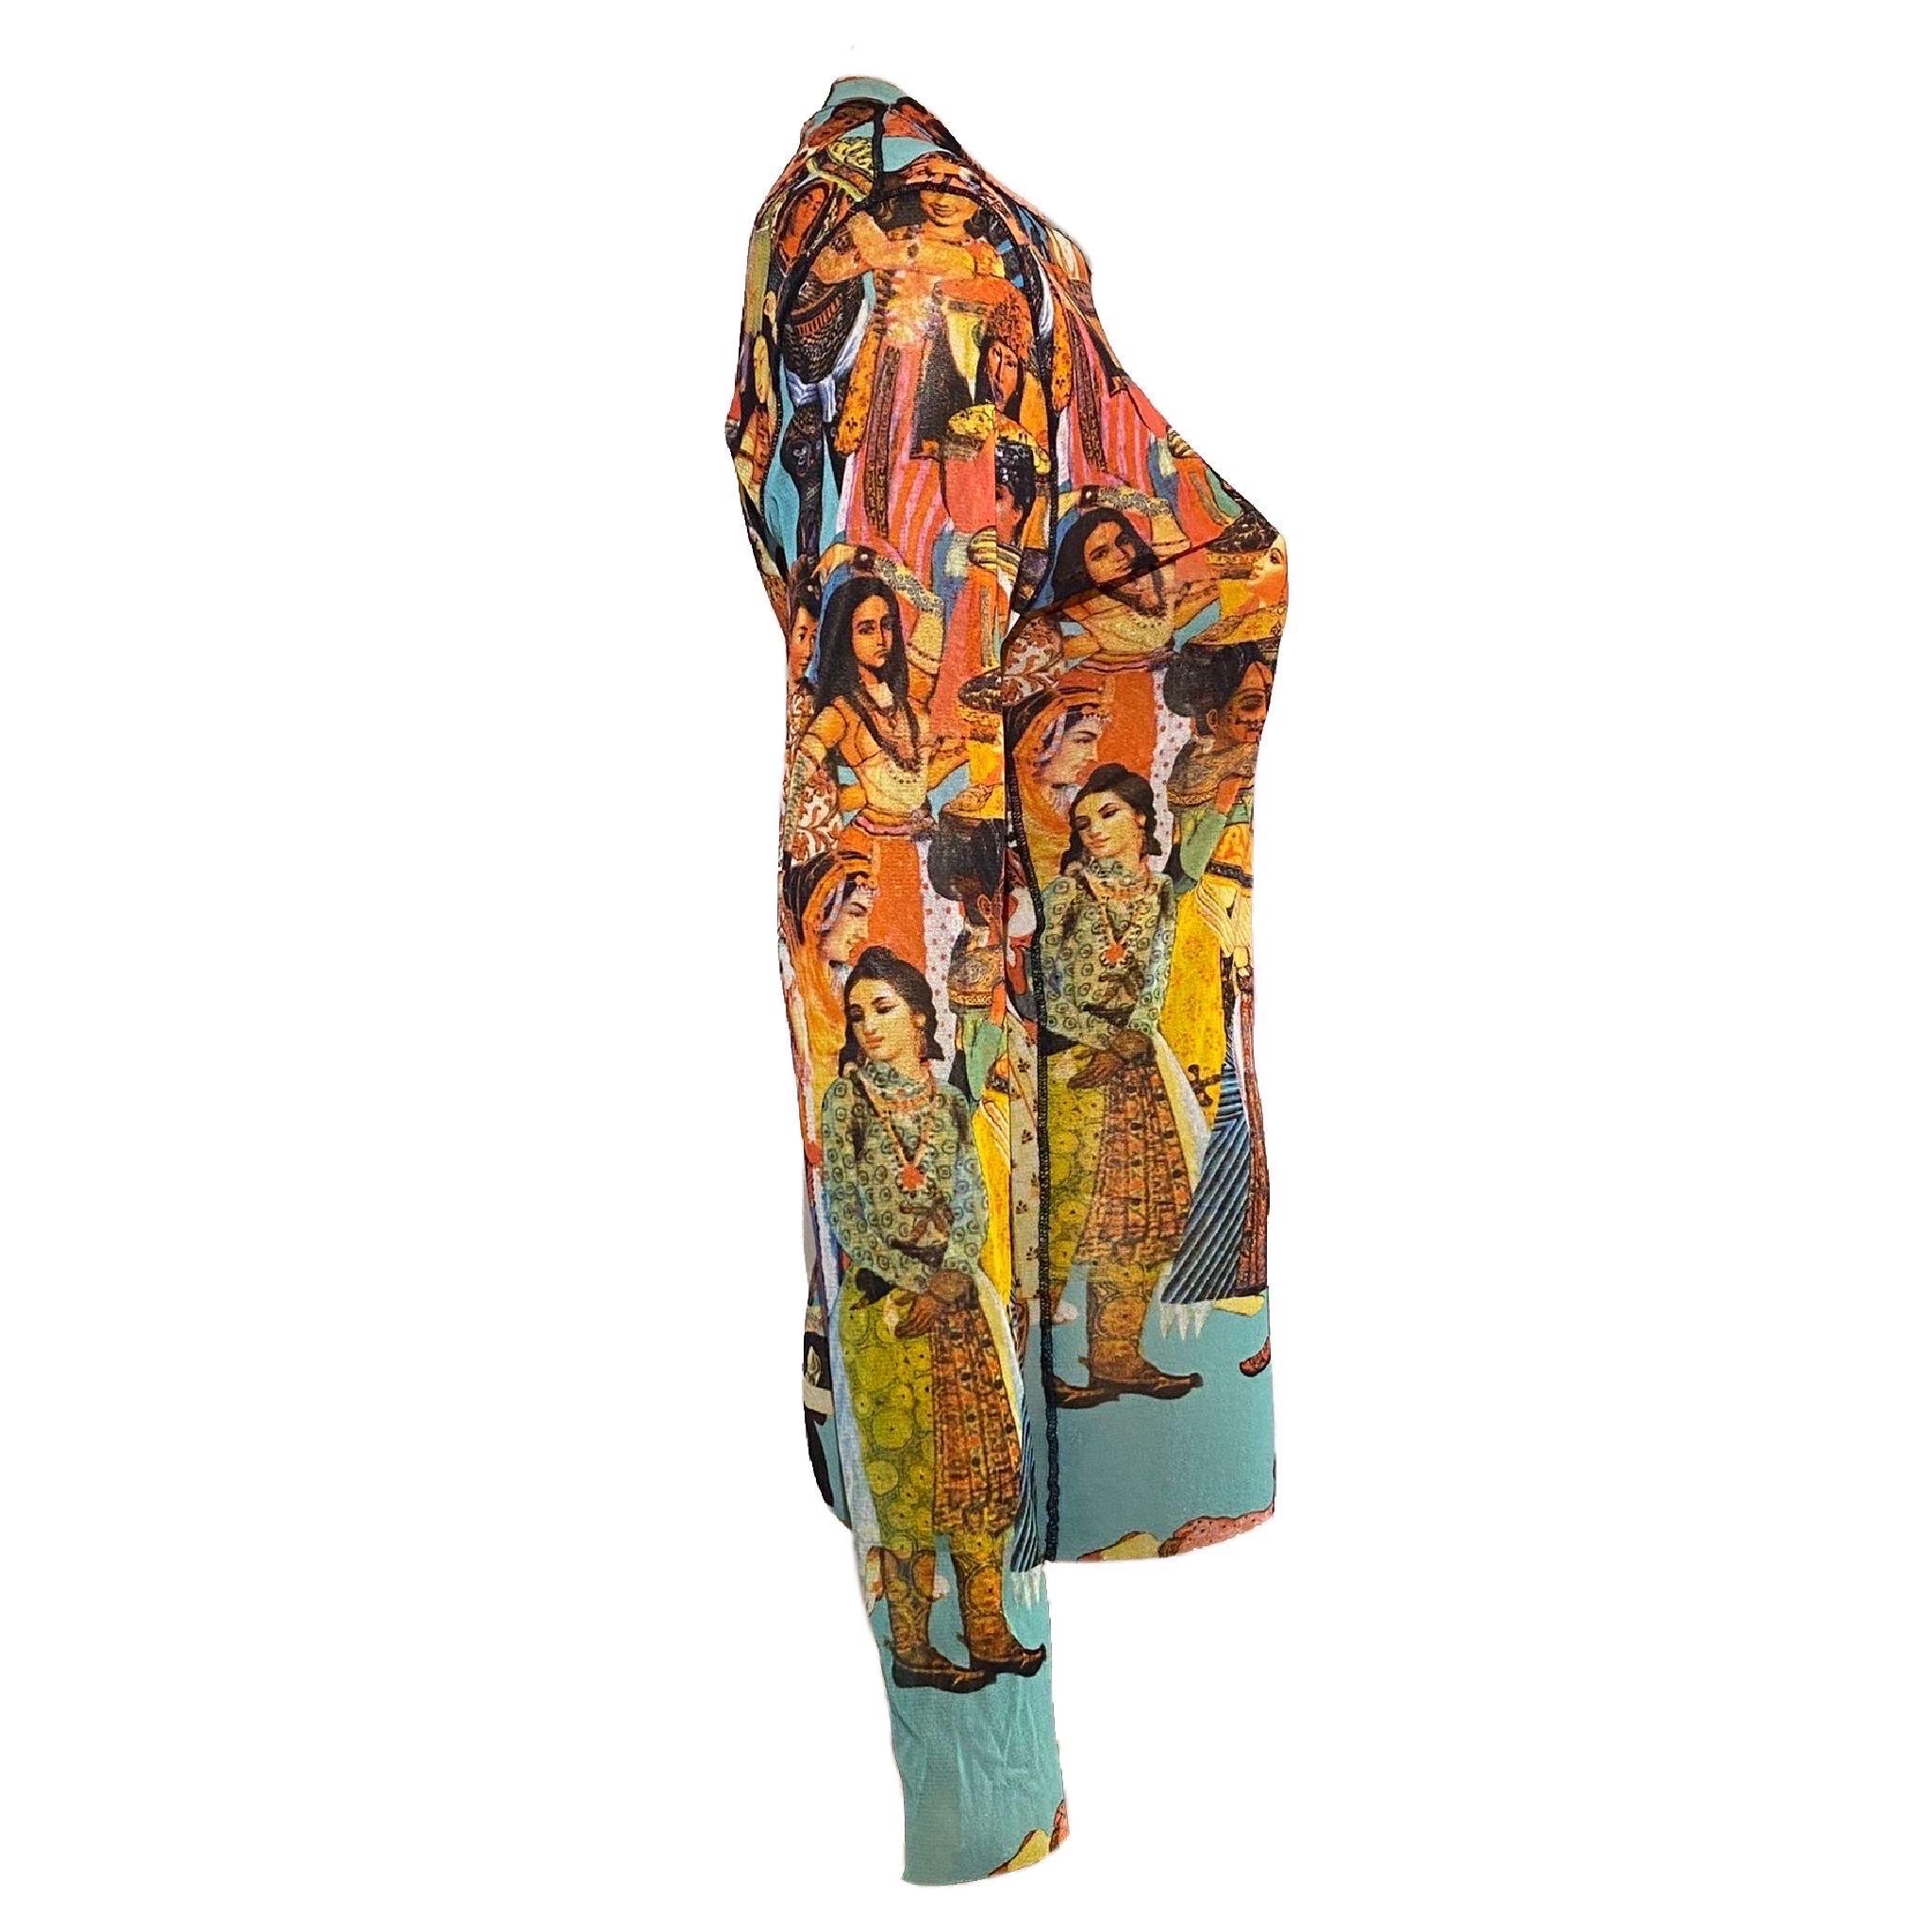 Jean Paul Gaultier Début des années 2000, top en maille à manches longues avec imprimé de dames asiatiques. Célèbre sur Beyoncé

Taille L

d'épaule à épaule : 40 cm / 15,7 inch
de la base à la base : 46 cm / 18.1 inch
longueur des manches : 65 cm /